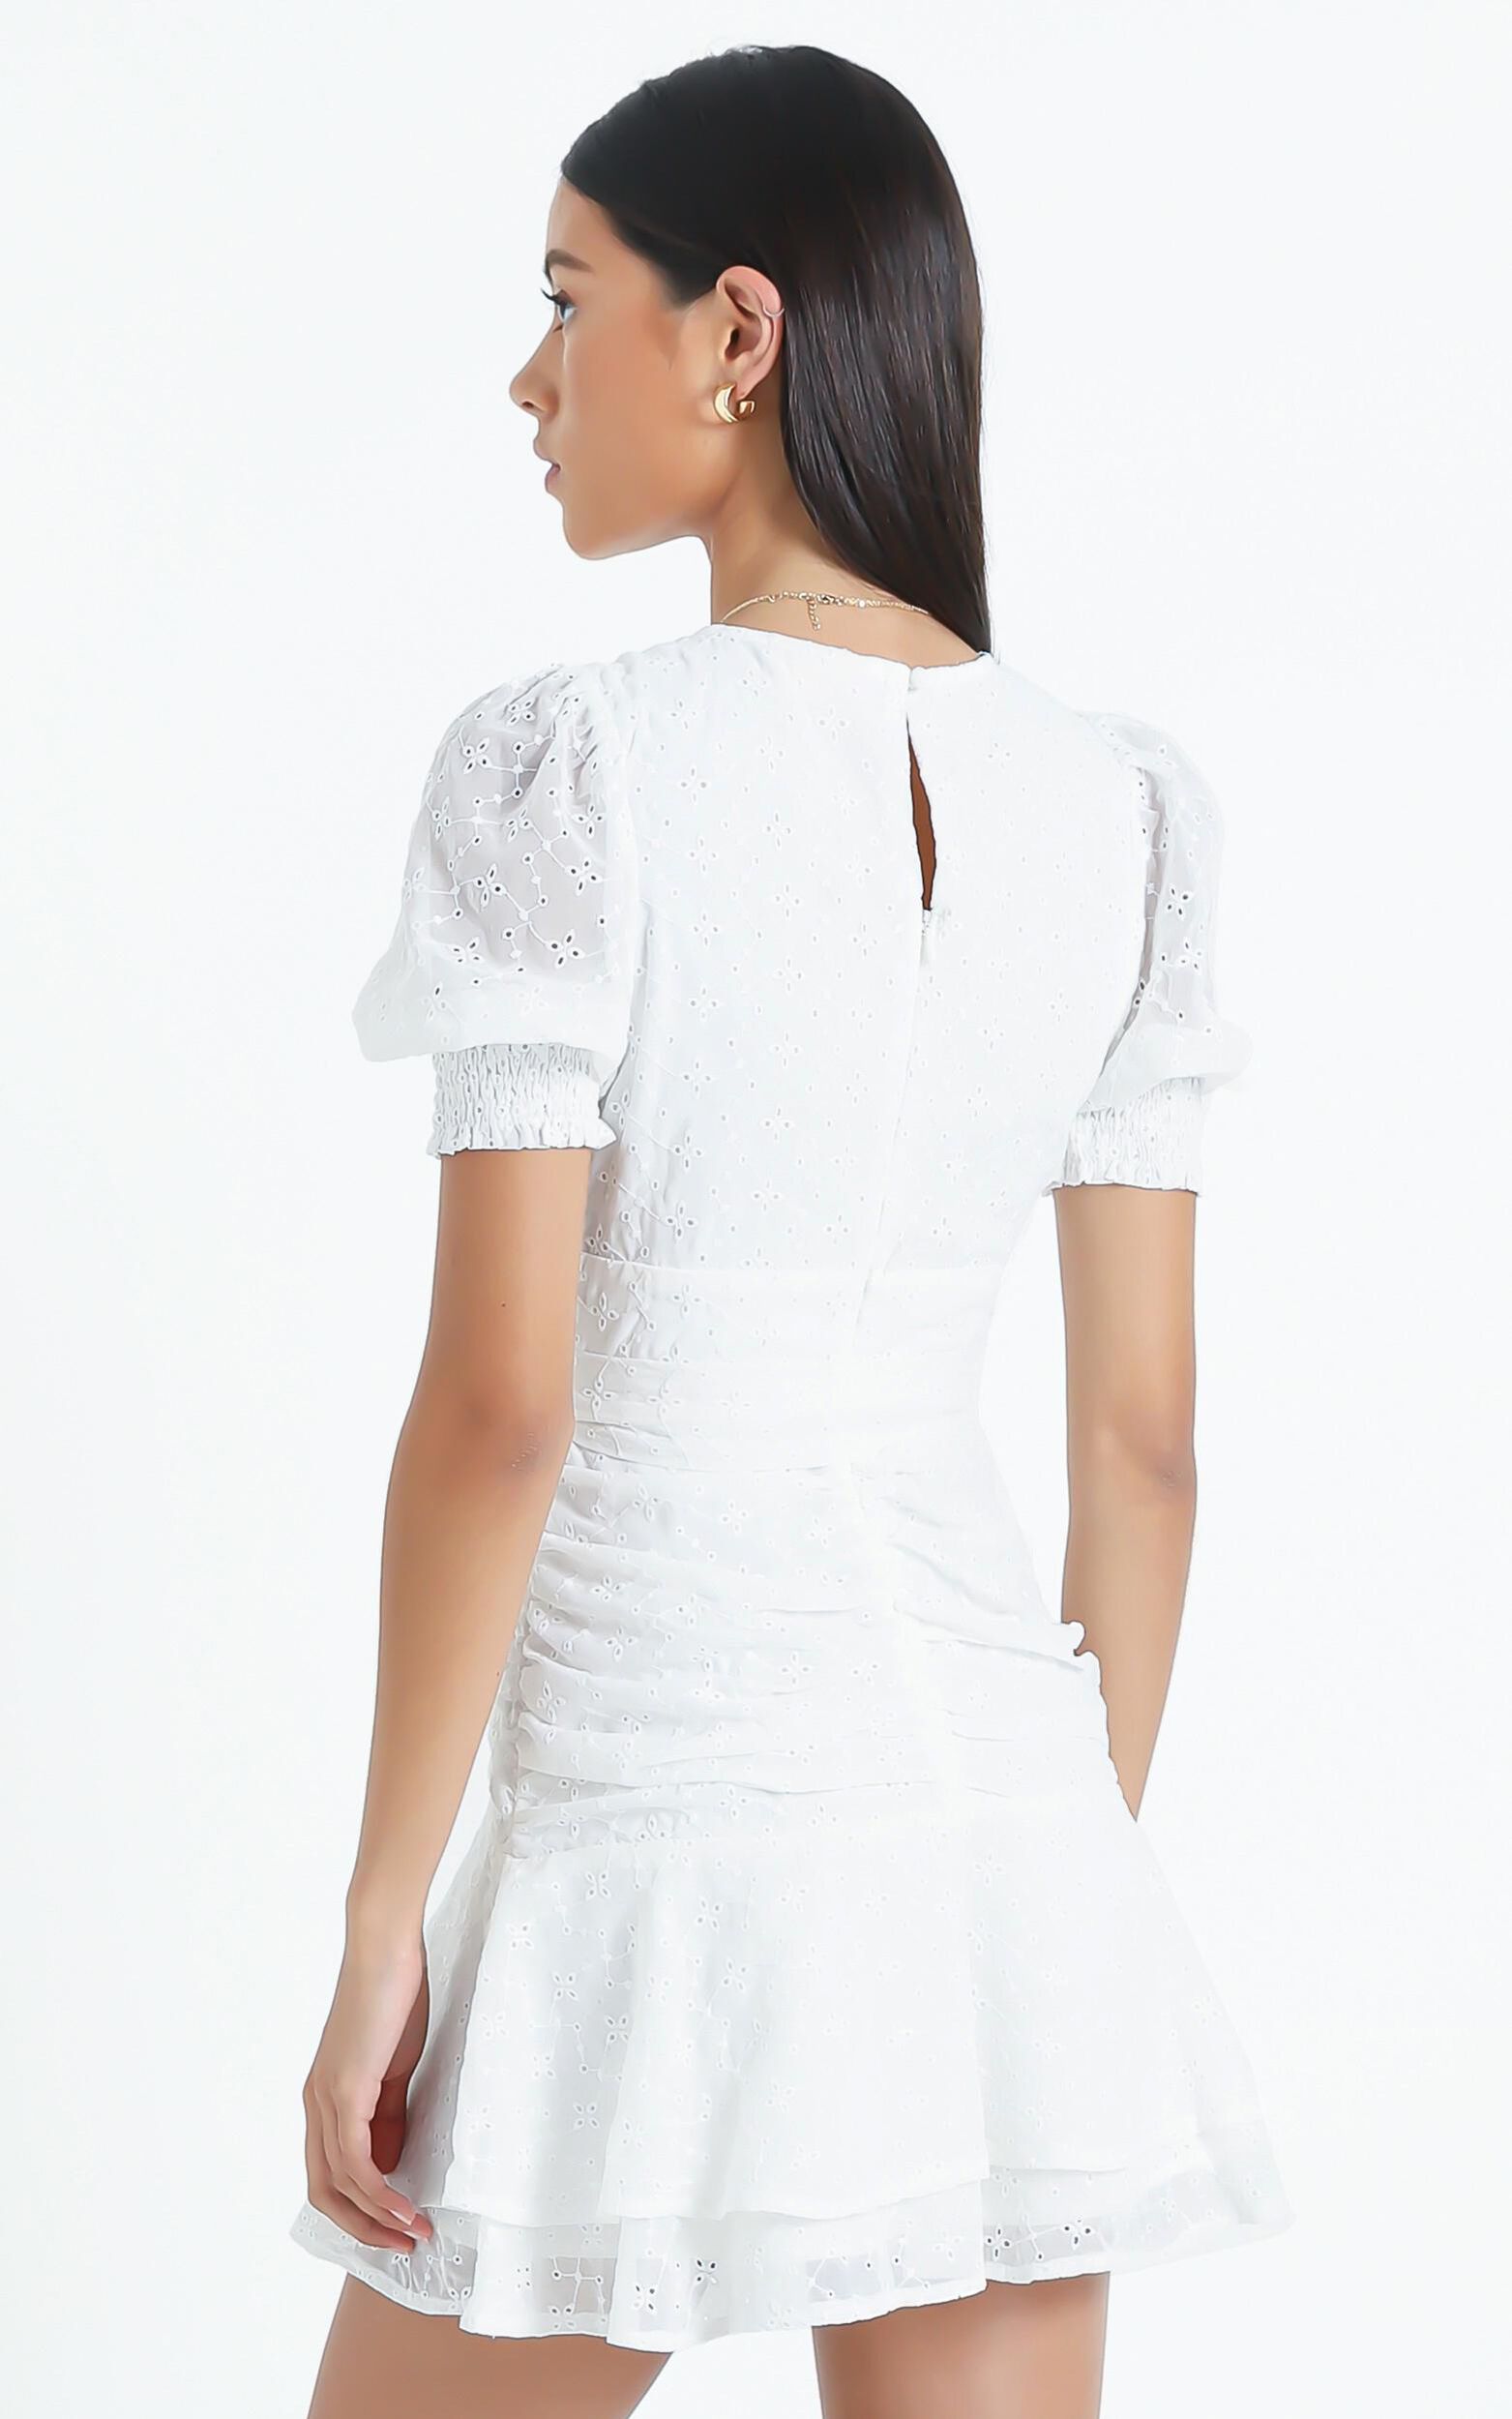 Lambeth Dress in White Embroidery | Showpo USA